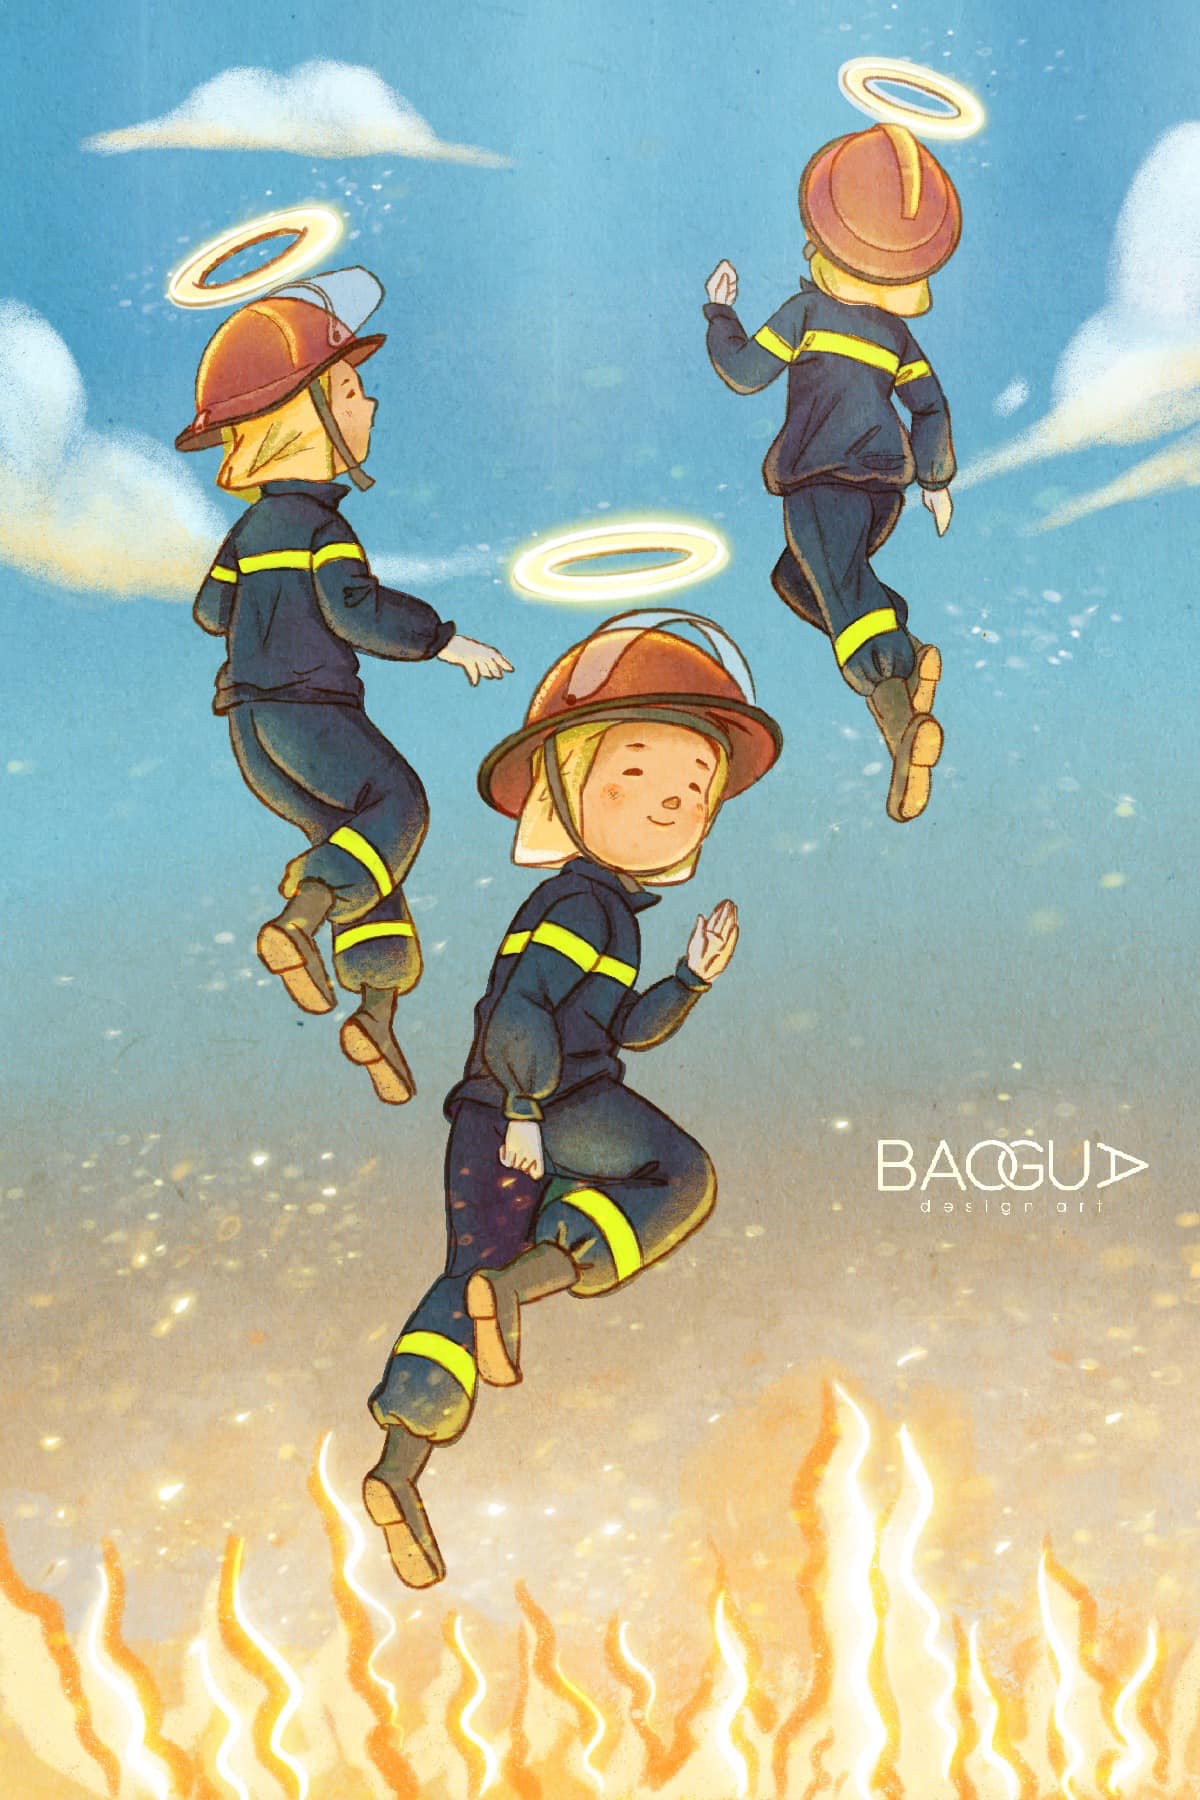 Hãy xem những hình ảnh về cứu hỏa để cảm nhận sự nghiệp cao cả của những người lính đội phòng cháy chữa cháy. Họ là những người hùng không ngừng ghi danh vào cuộc đời để cứu giúp những người trong hoạn nạn và giữ vững tổ ấm cho mọi nhà.